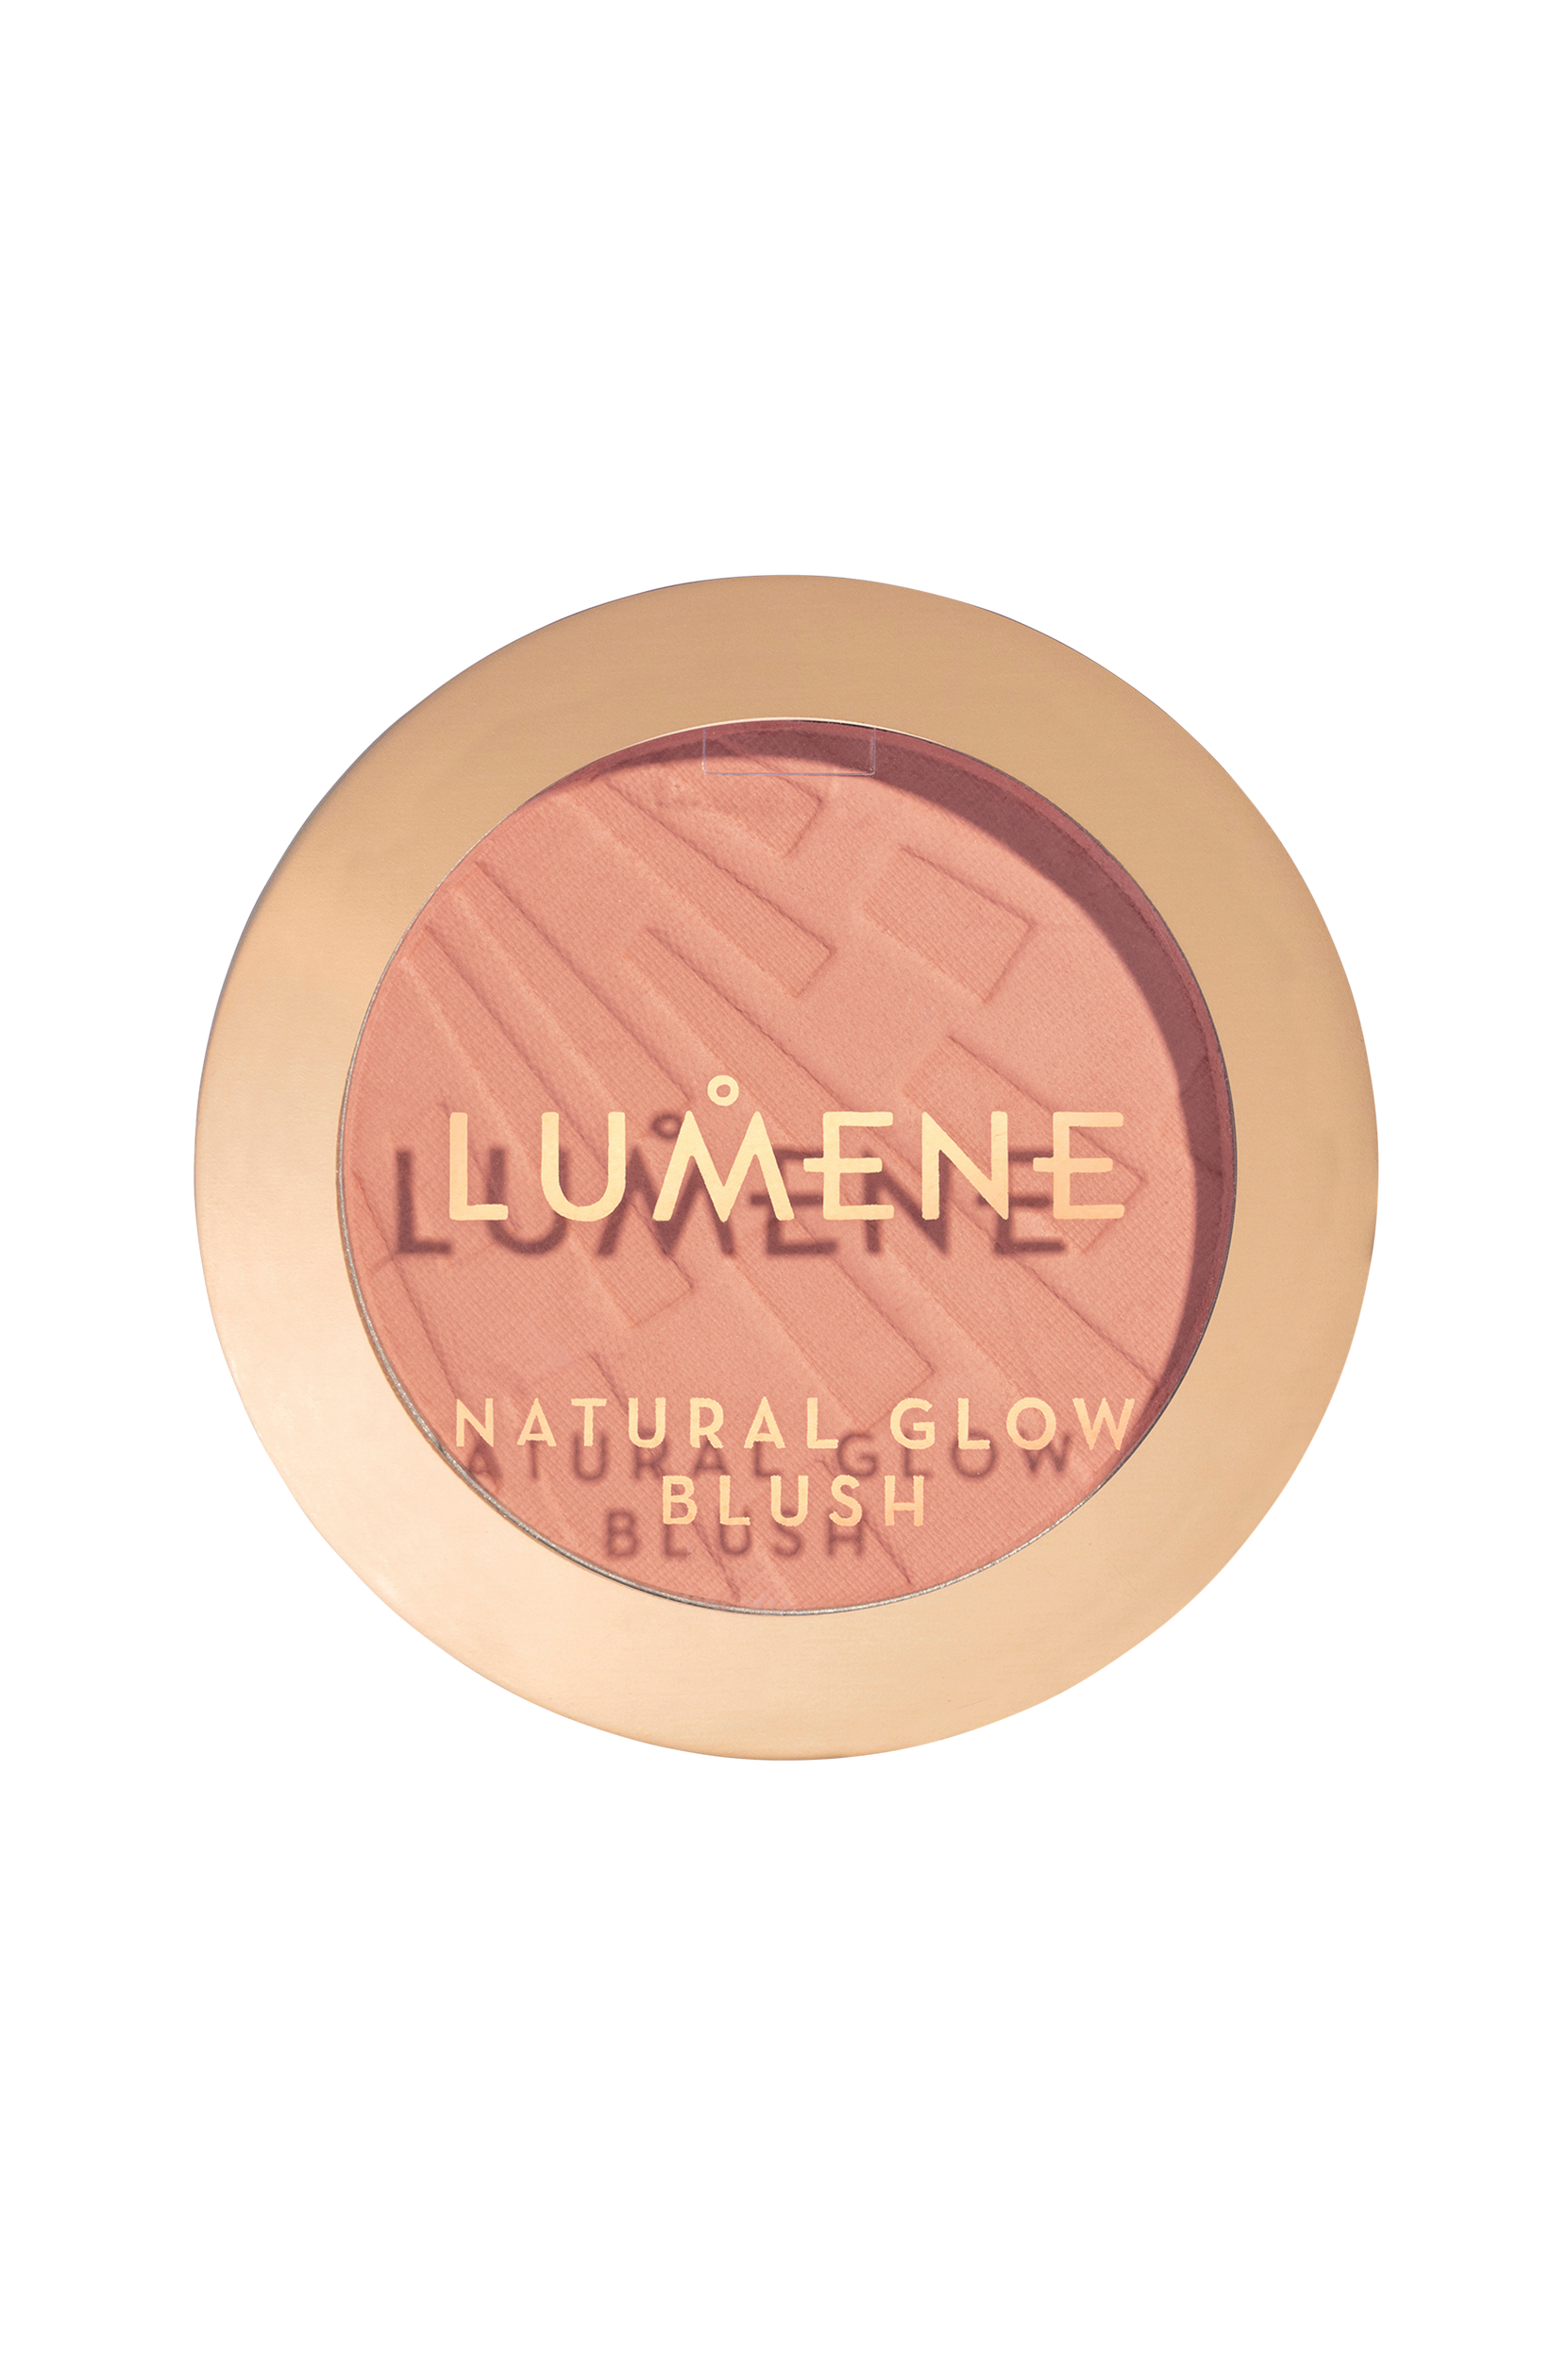 Natural Glow Blush, Lumene